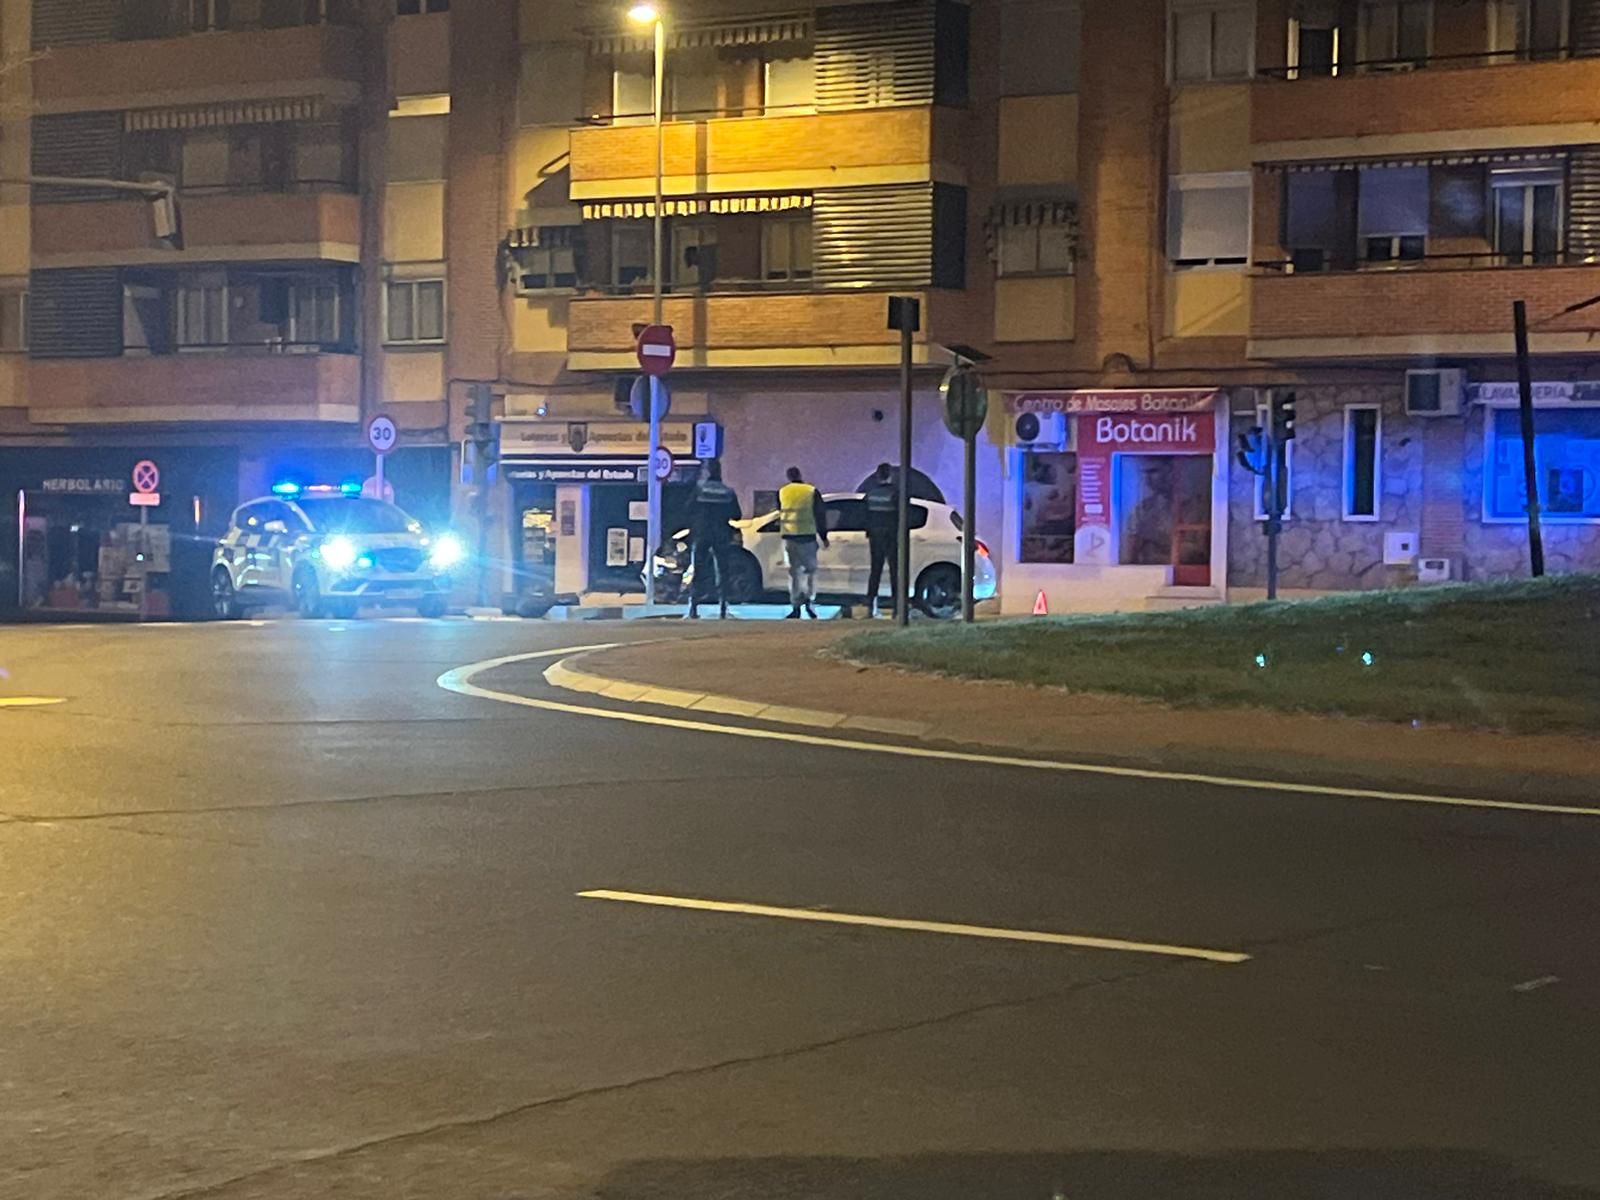 GALERÍA | Un conductor choca contra un semáforo en la rotonda de La Flecha y lo derriba